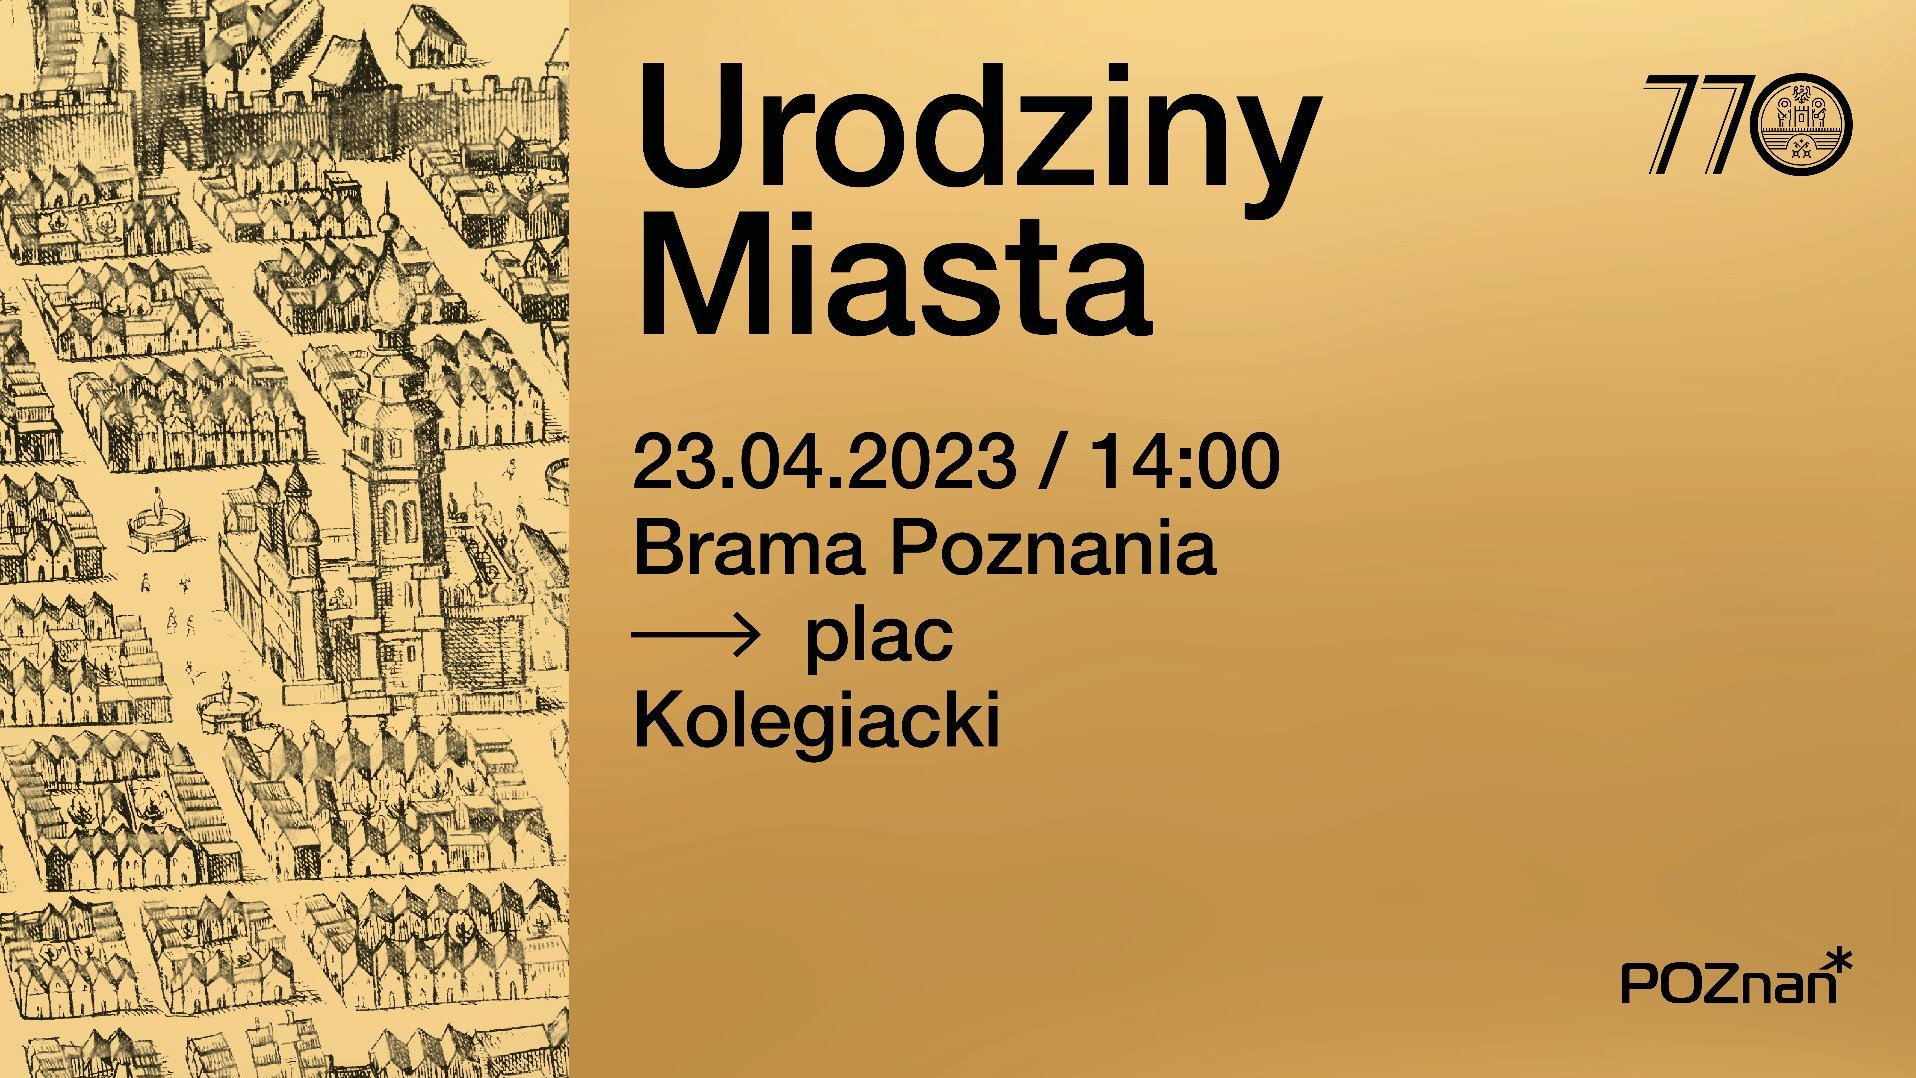 Grafika: rysunek Poznania i najważniejsze informacje o urodzinach Miasta